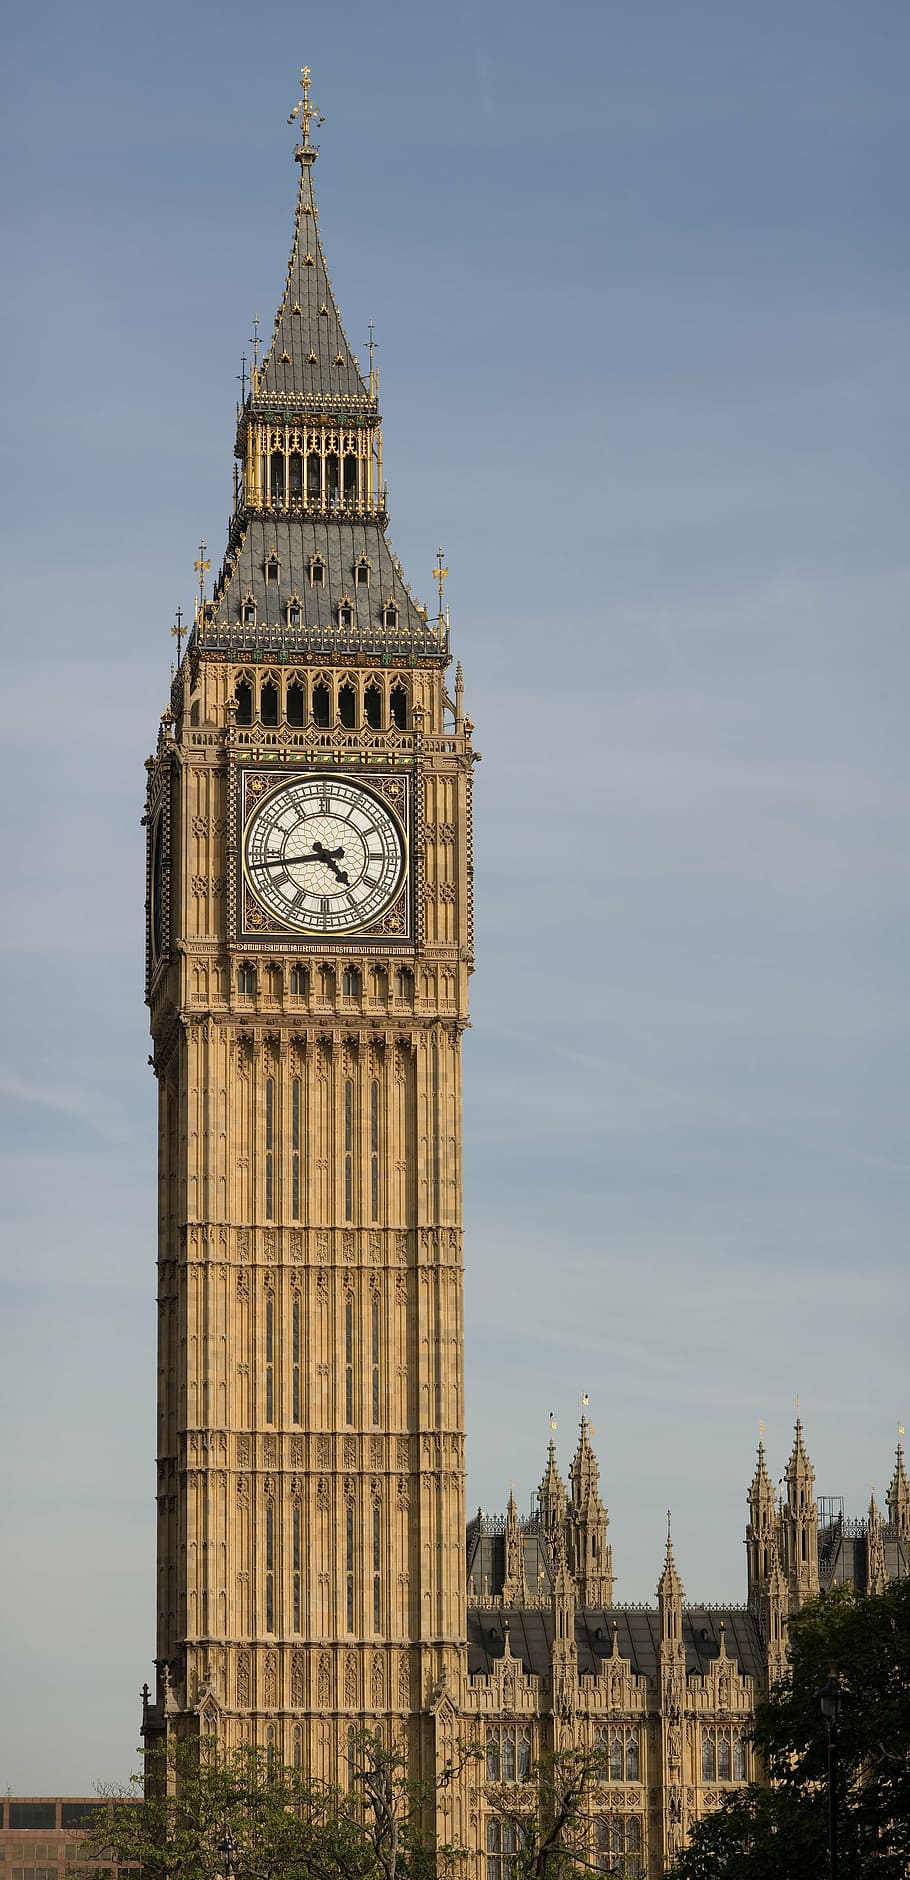 ビッグベン, ロンドン, イギリス, 構築された構造, 建物の外観, 建築, 空, 時計塔, 旅行の目的地, 塔